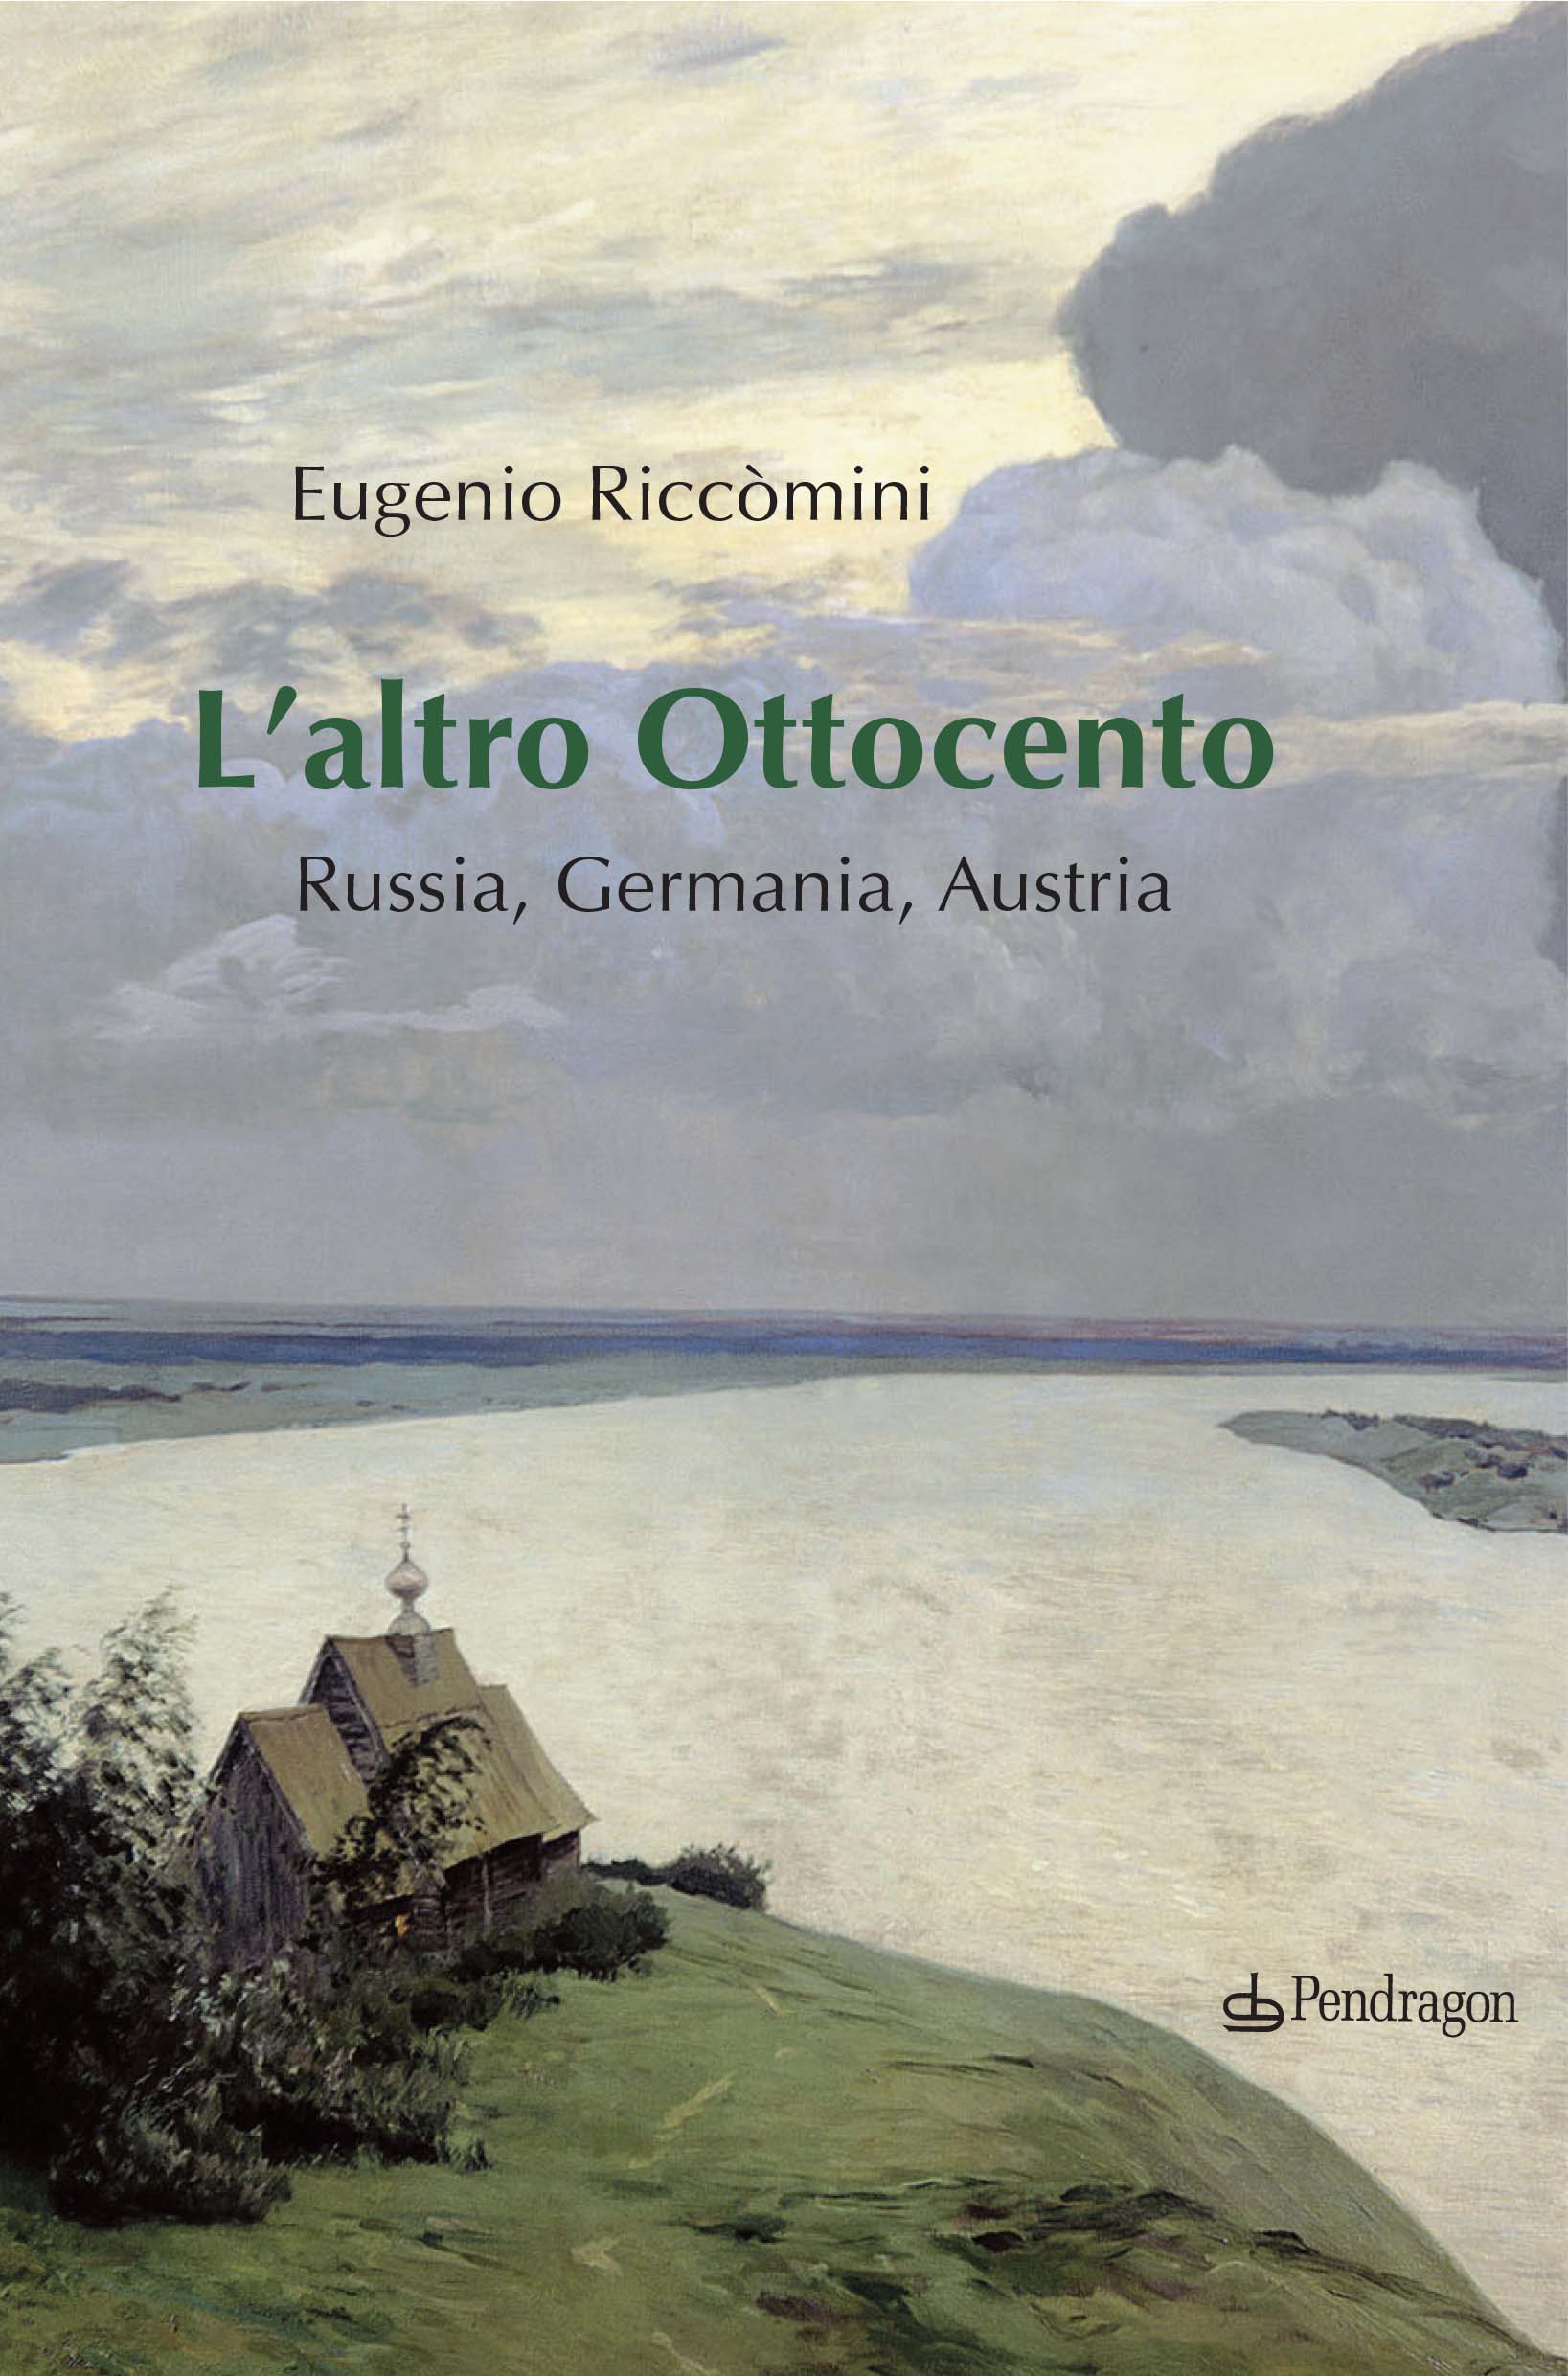 Eugenio Riccomini – L’altro Ottocento (Pendragon, Bologna 2018)